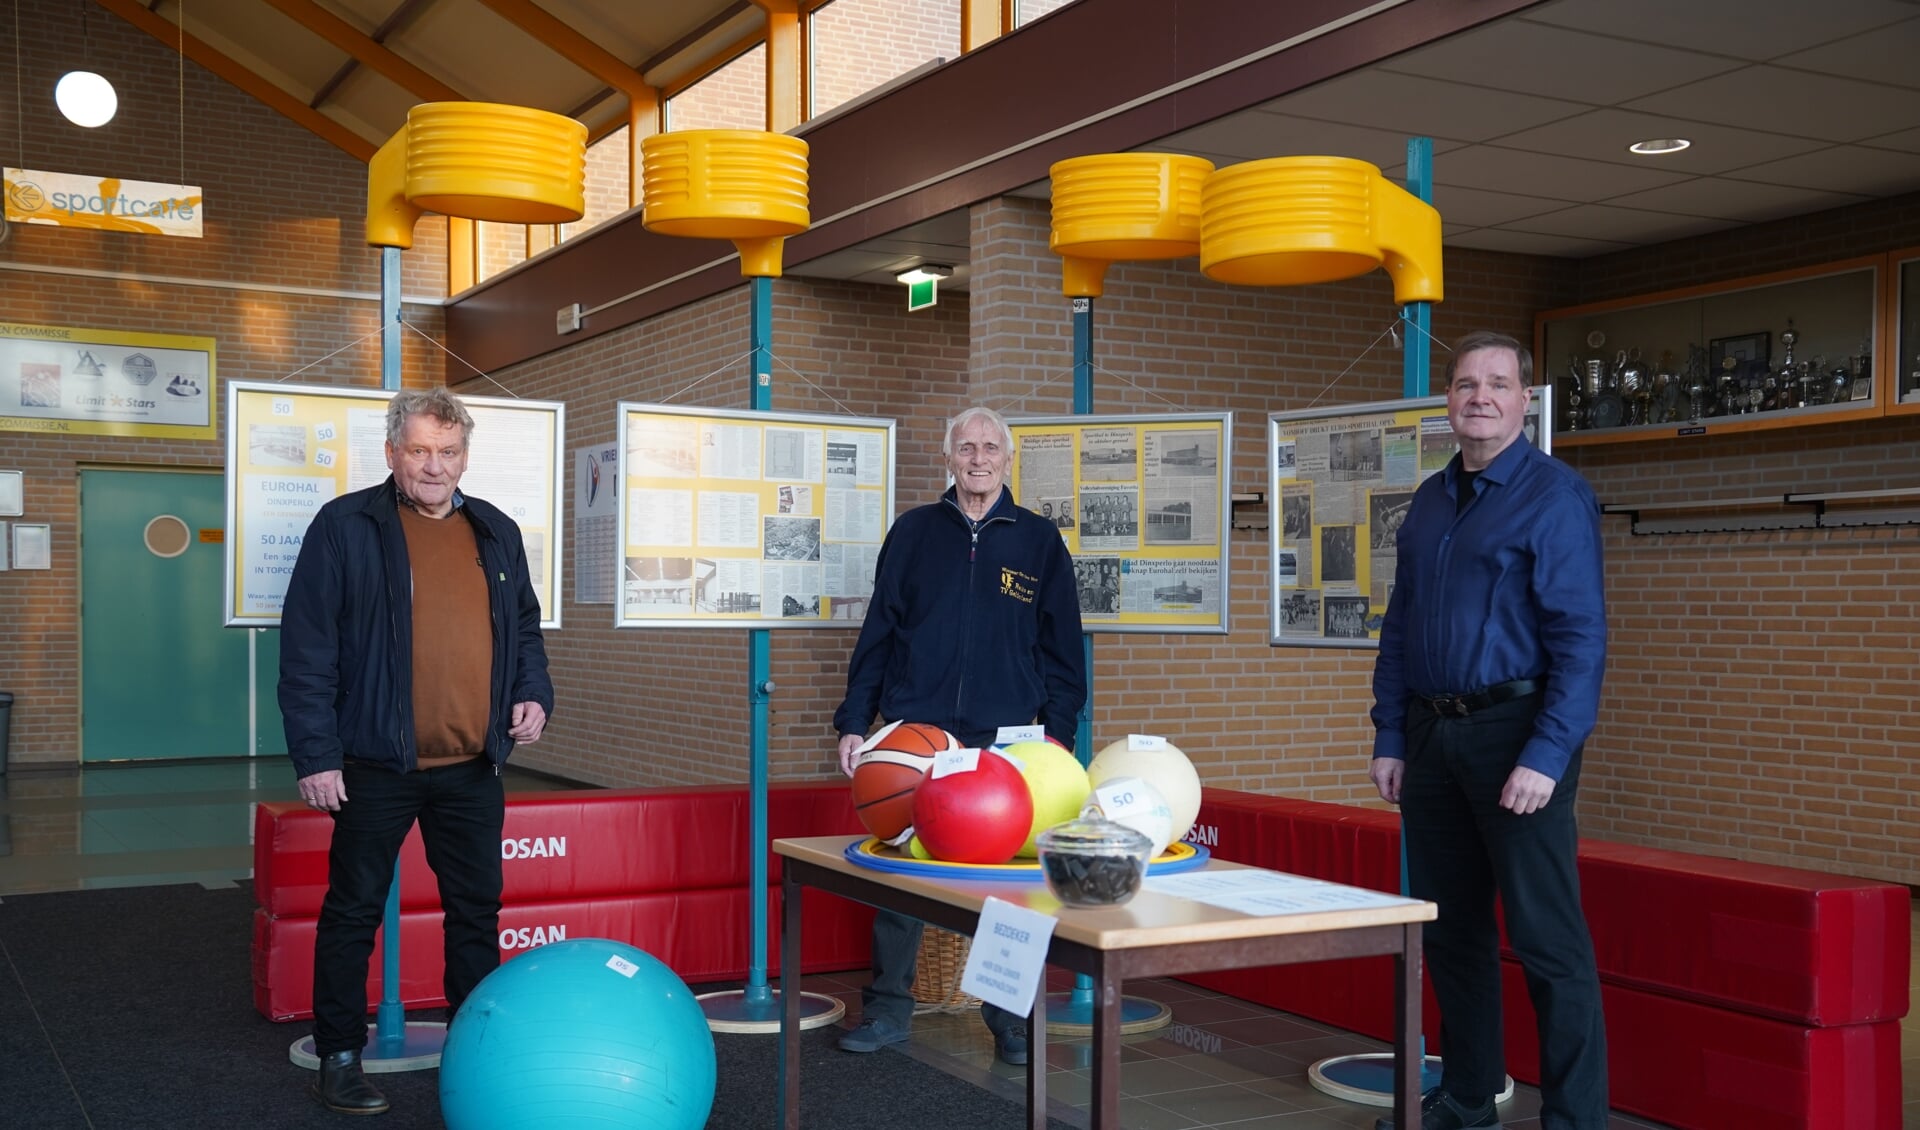 De sponsorcommissie, vlnr: Freek Diersen, Ben Maandag en Wim Wisselink. Foto: Frank Vinkenvleugel